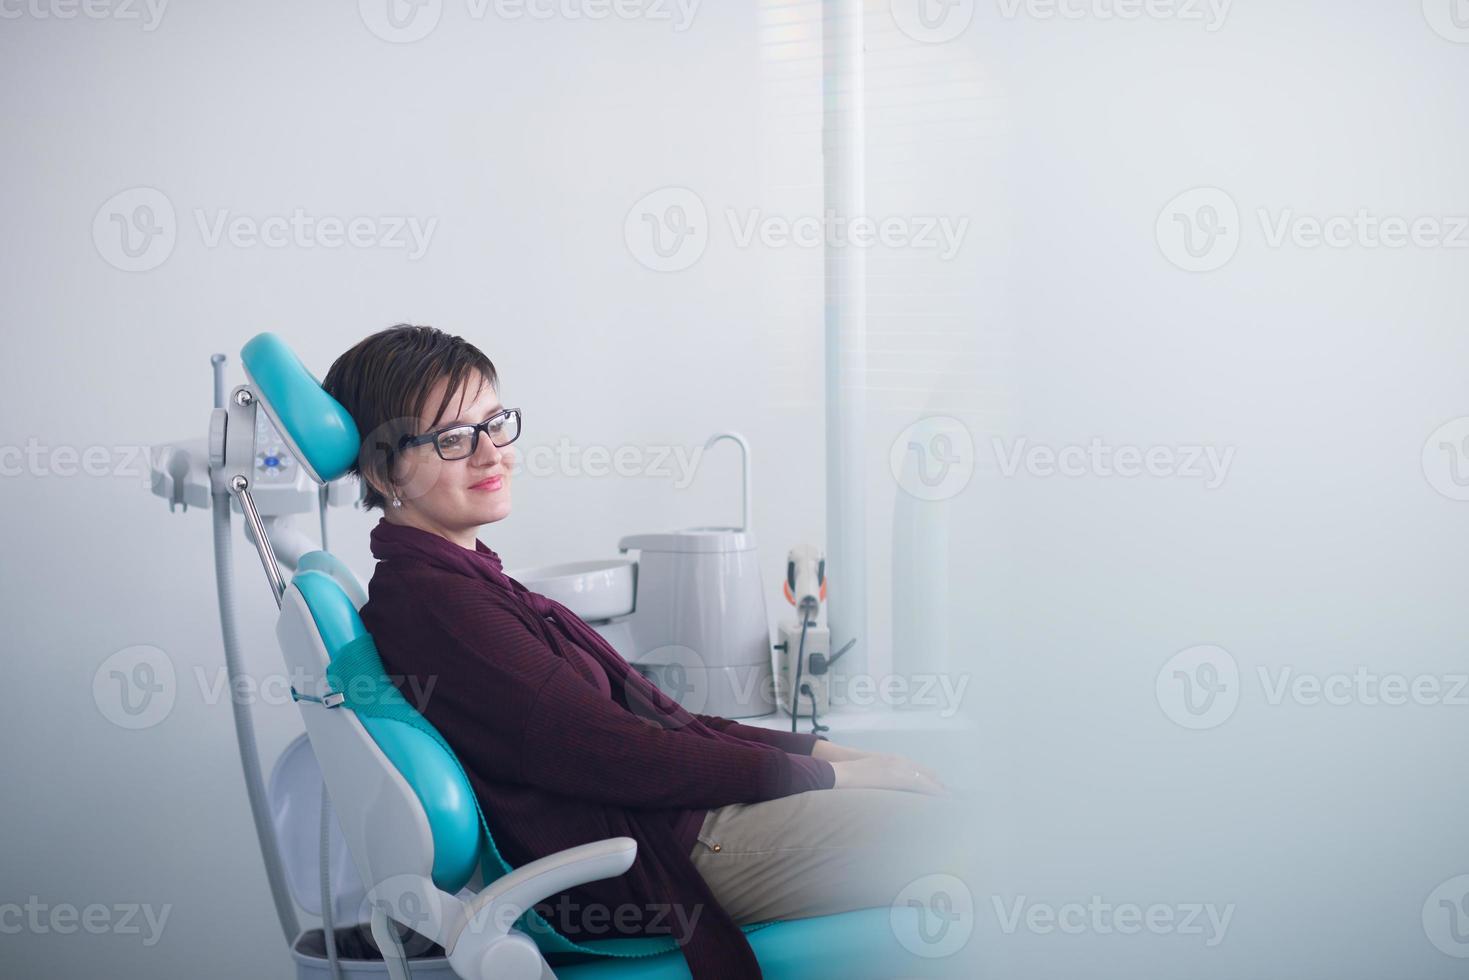 Patientin beim Zahnarzt foto